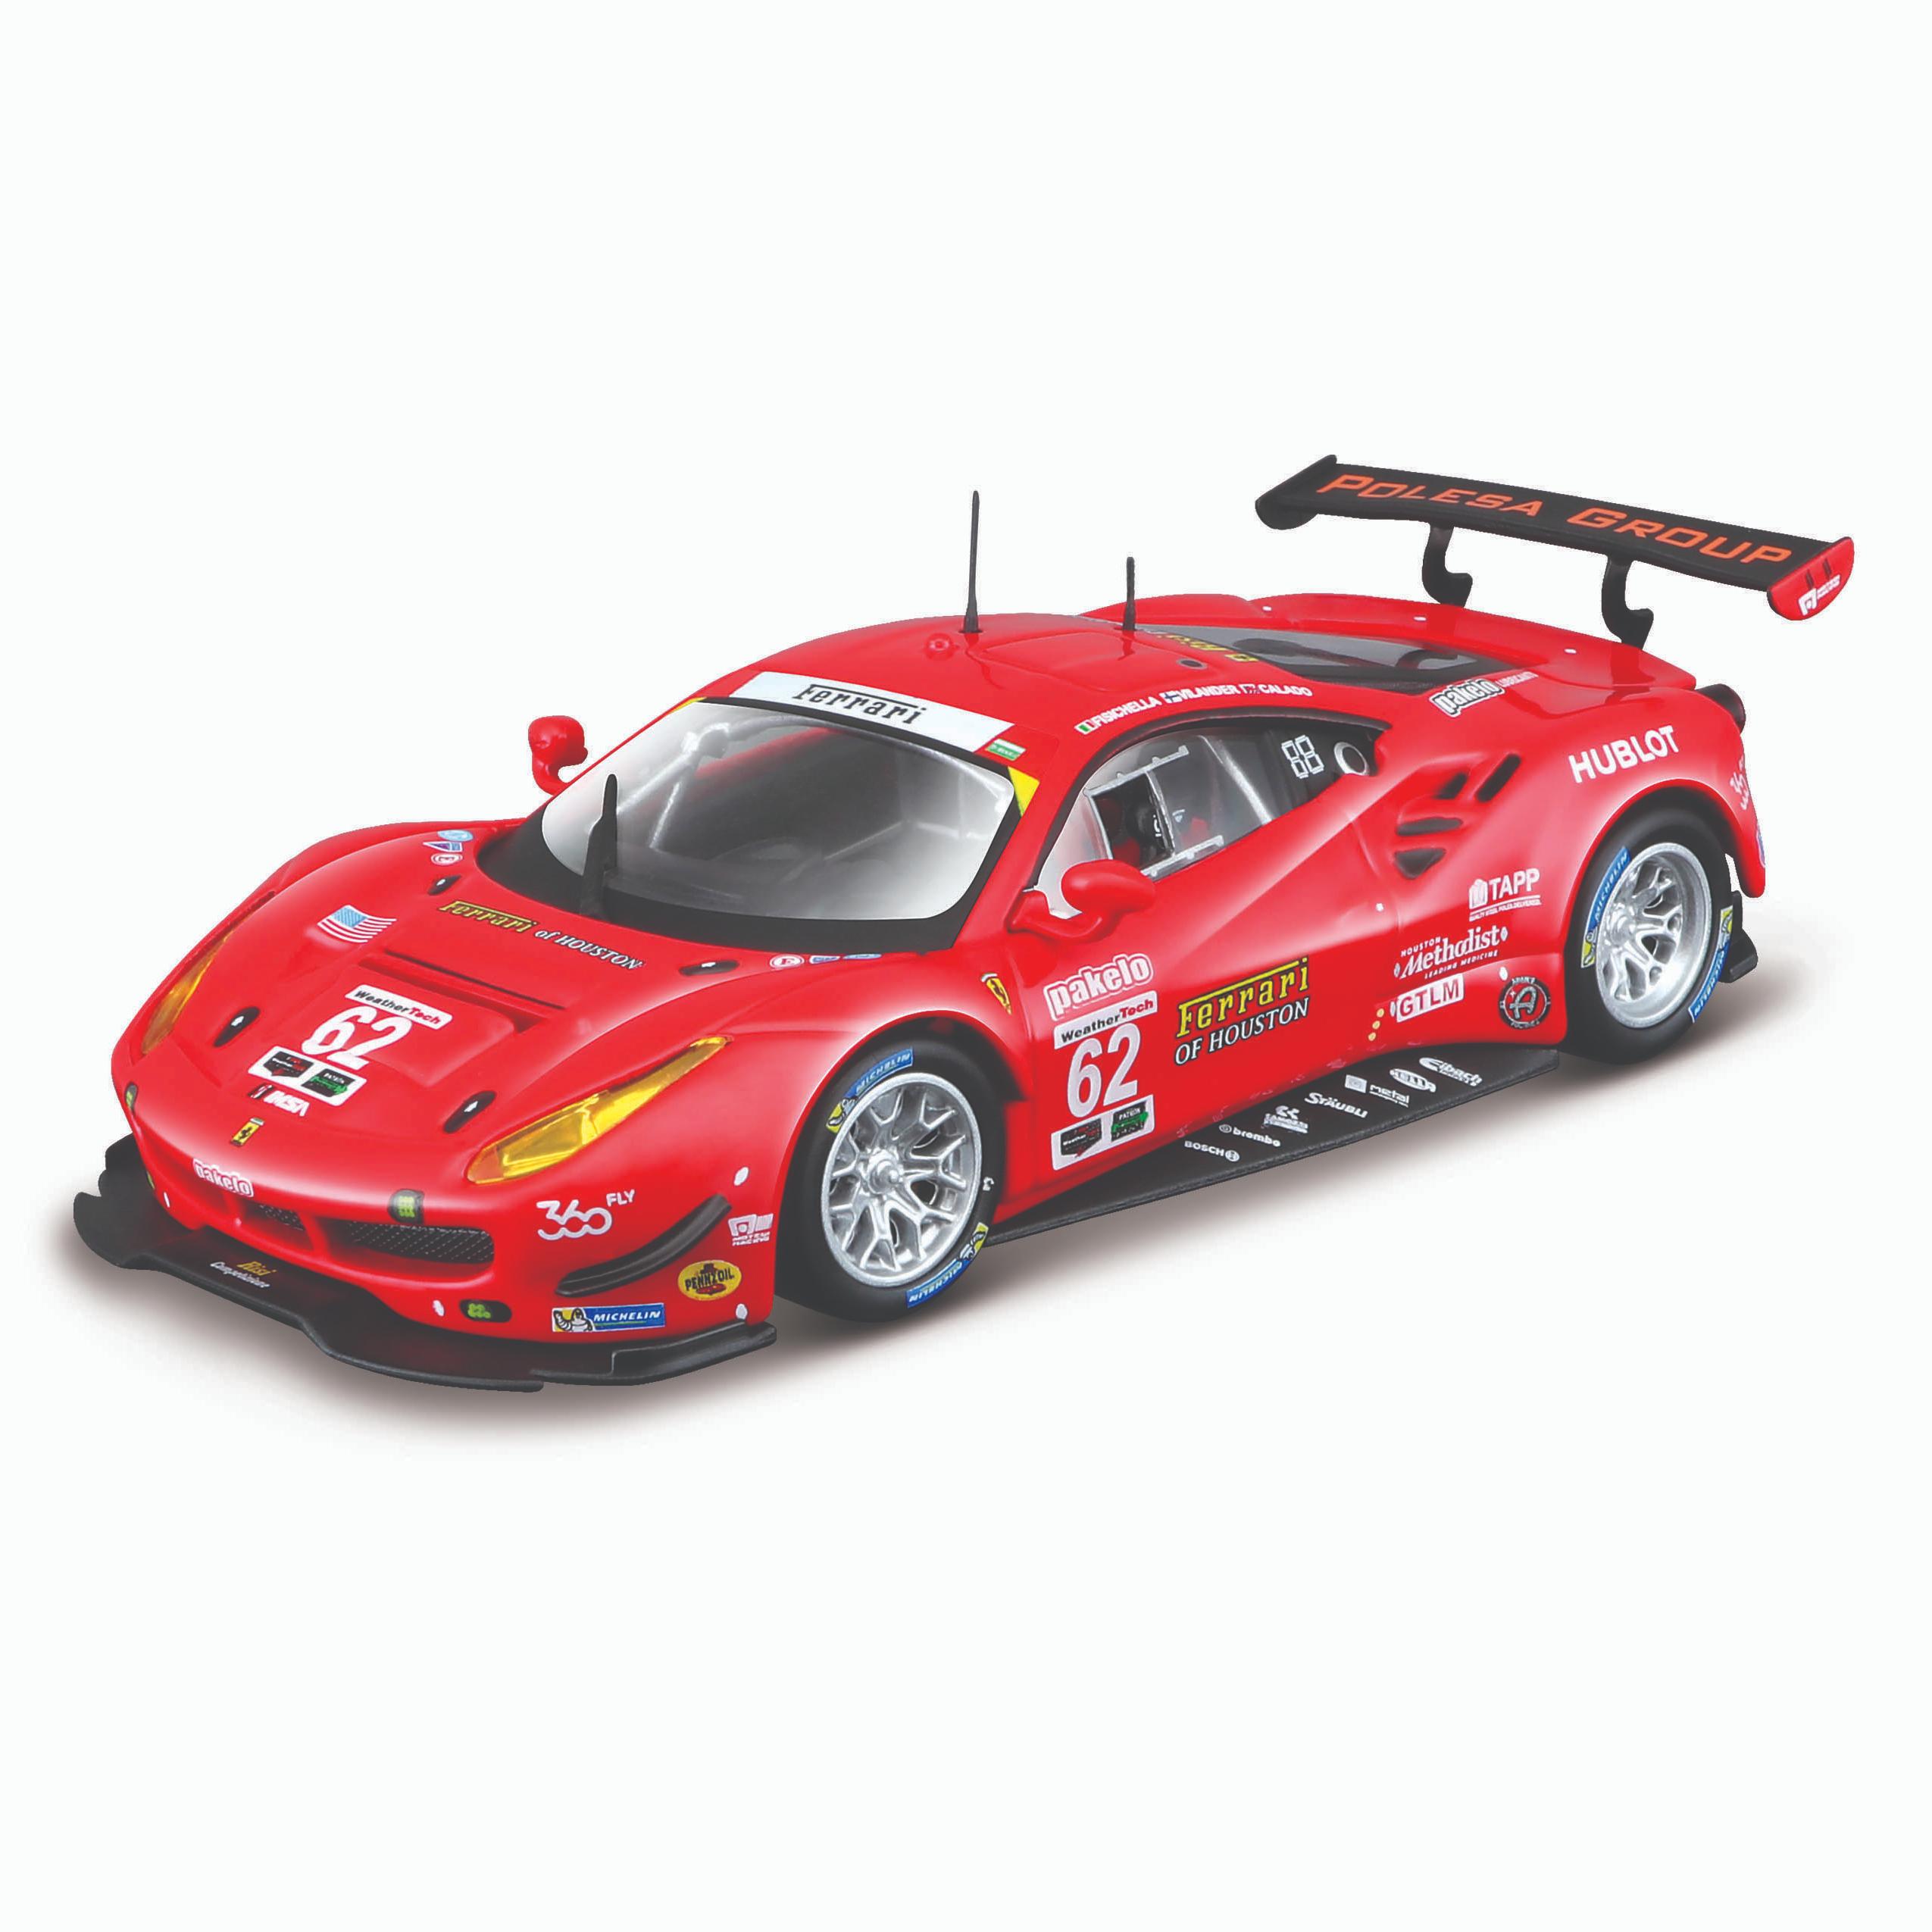 Коллекционная машинка Bburago Феррари 1:43 Ferrari Racing 488 GTE 2017,красная